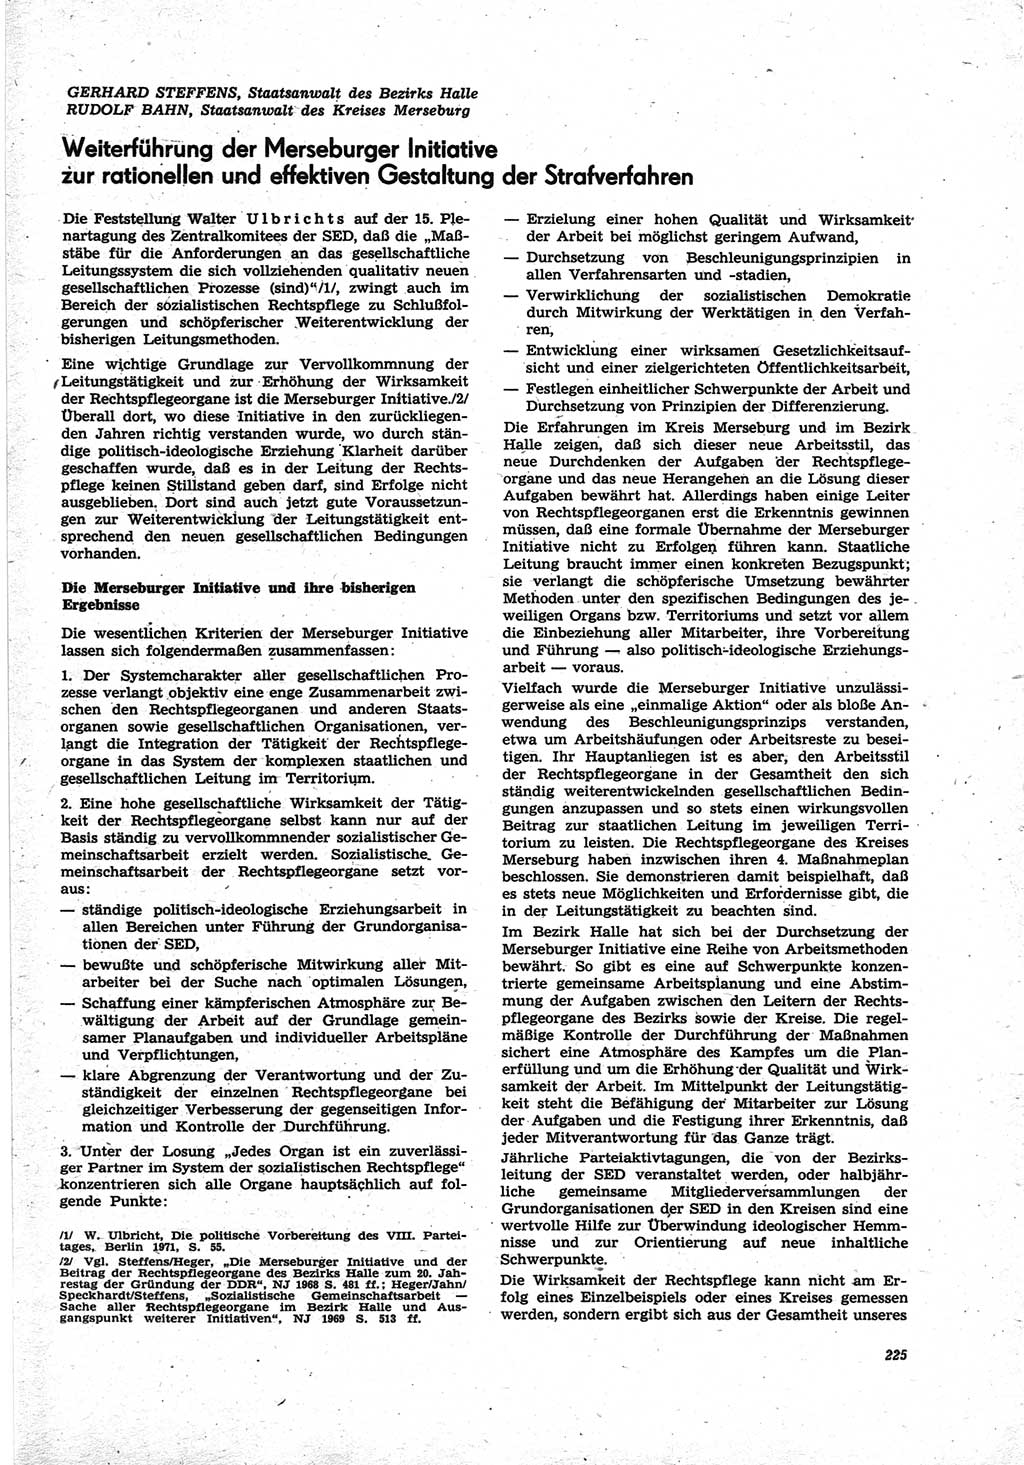 Neue Justiz (NJ), Zeitschrift für Recht und Rechtswissenschaft [Deutsche Demokratische Republik (DDR)], 25. Jahrgang 1971, Seite 225 (NJ DDR 1971, S. 225)